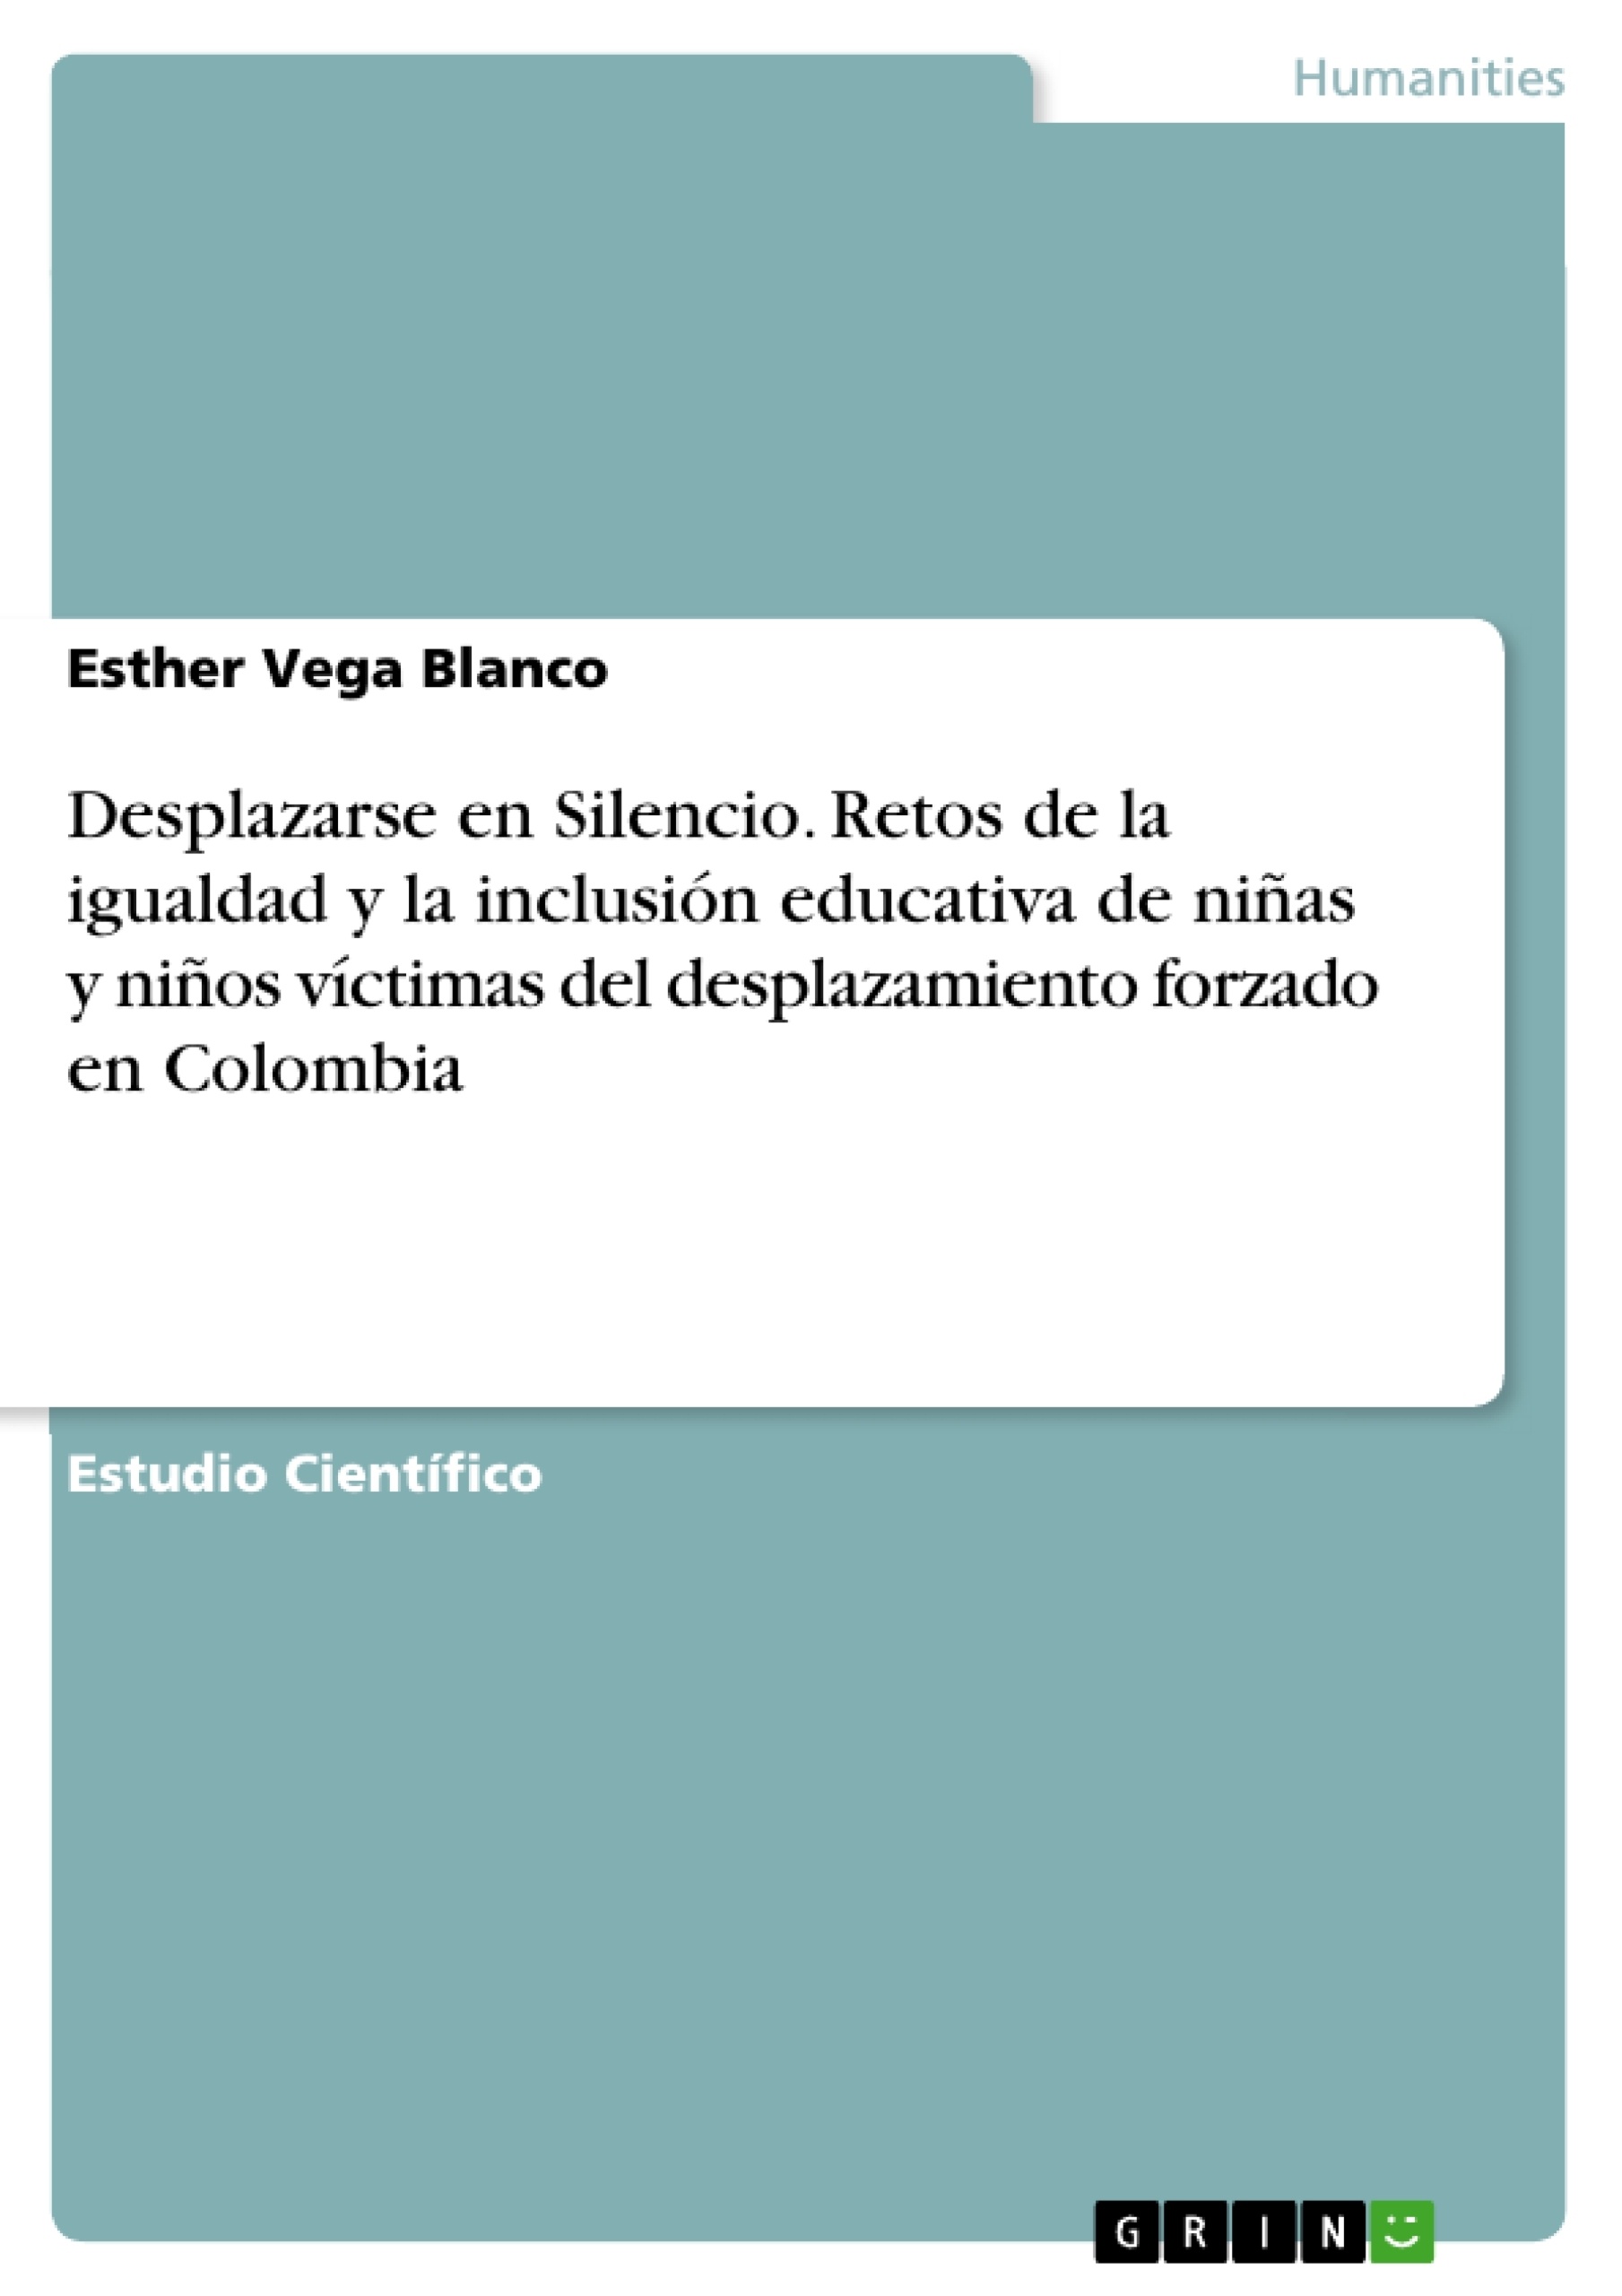 eBooks Kindle: DISEÑO ARTÍSTICO DE ROPA INTERIOR FEMENINA  (Spanish Edition), CAMARGO HERNÁNDEZ, DAVID FRANCISCO